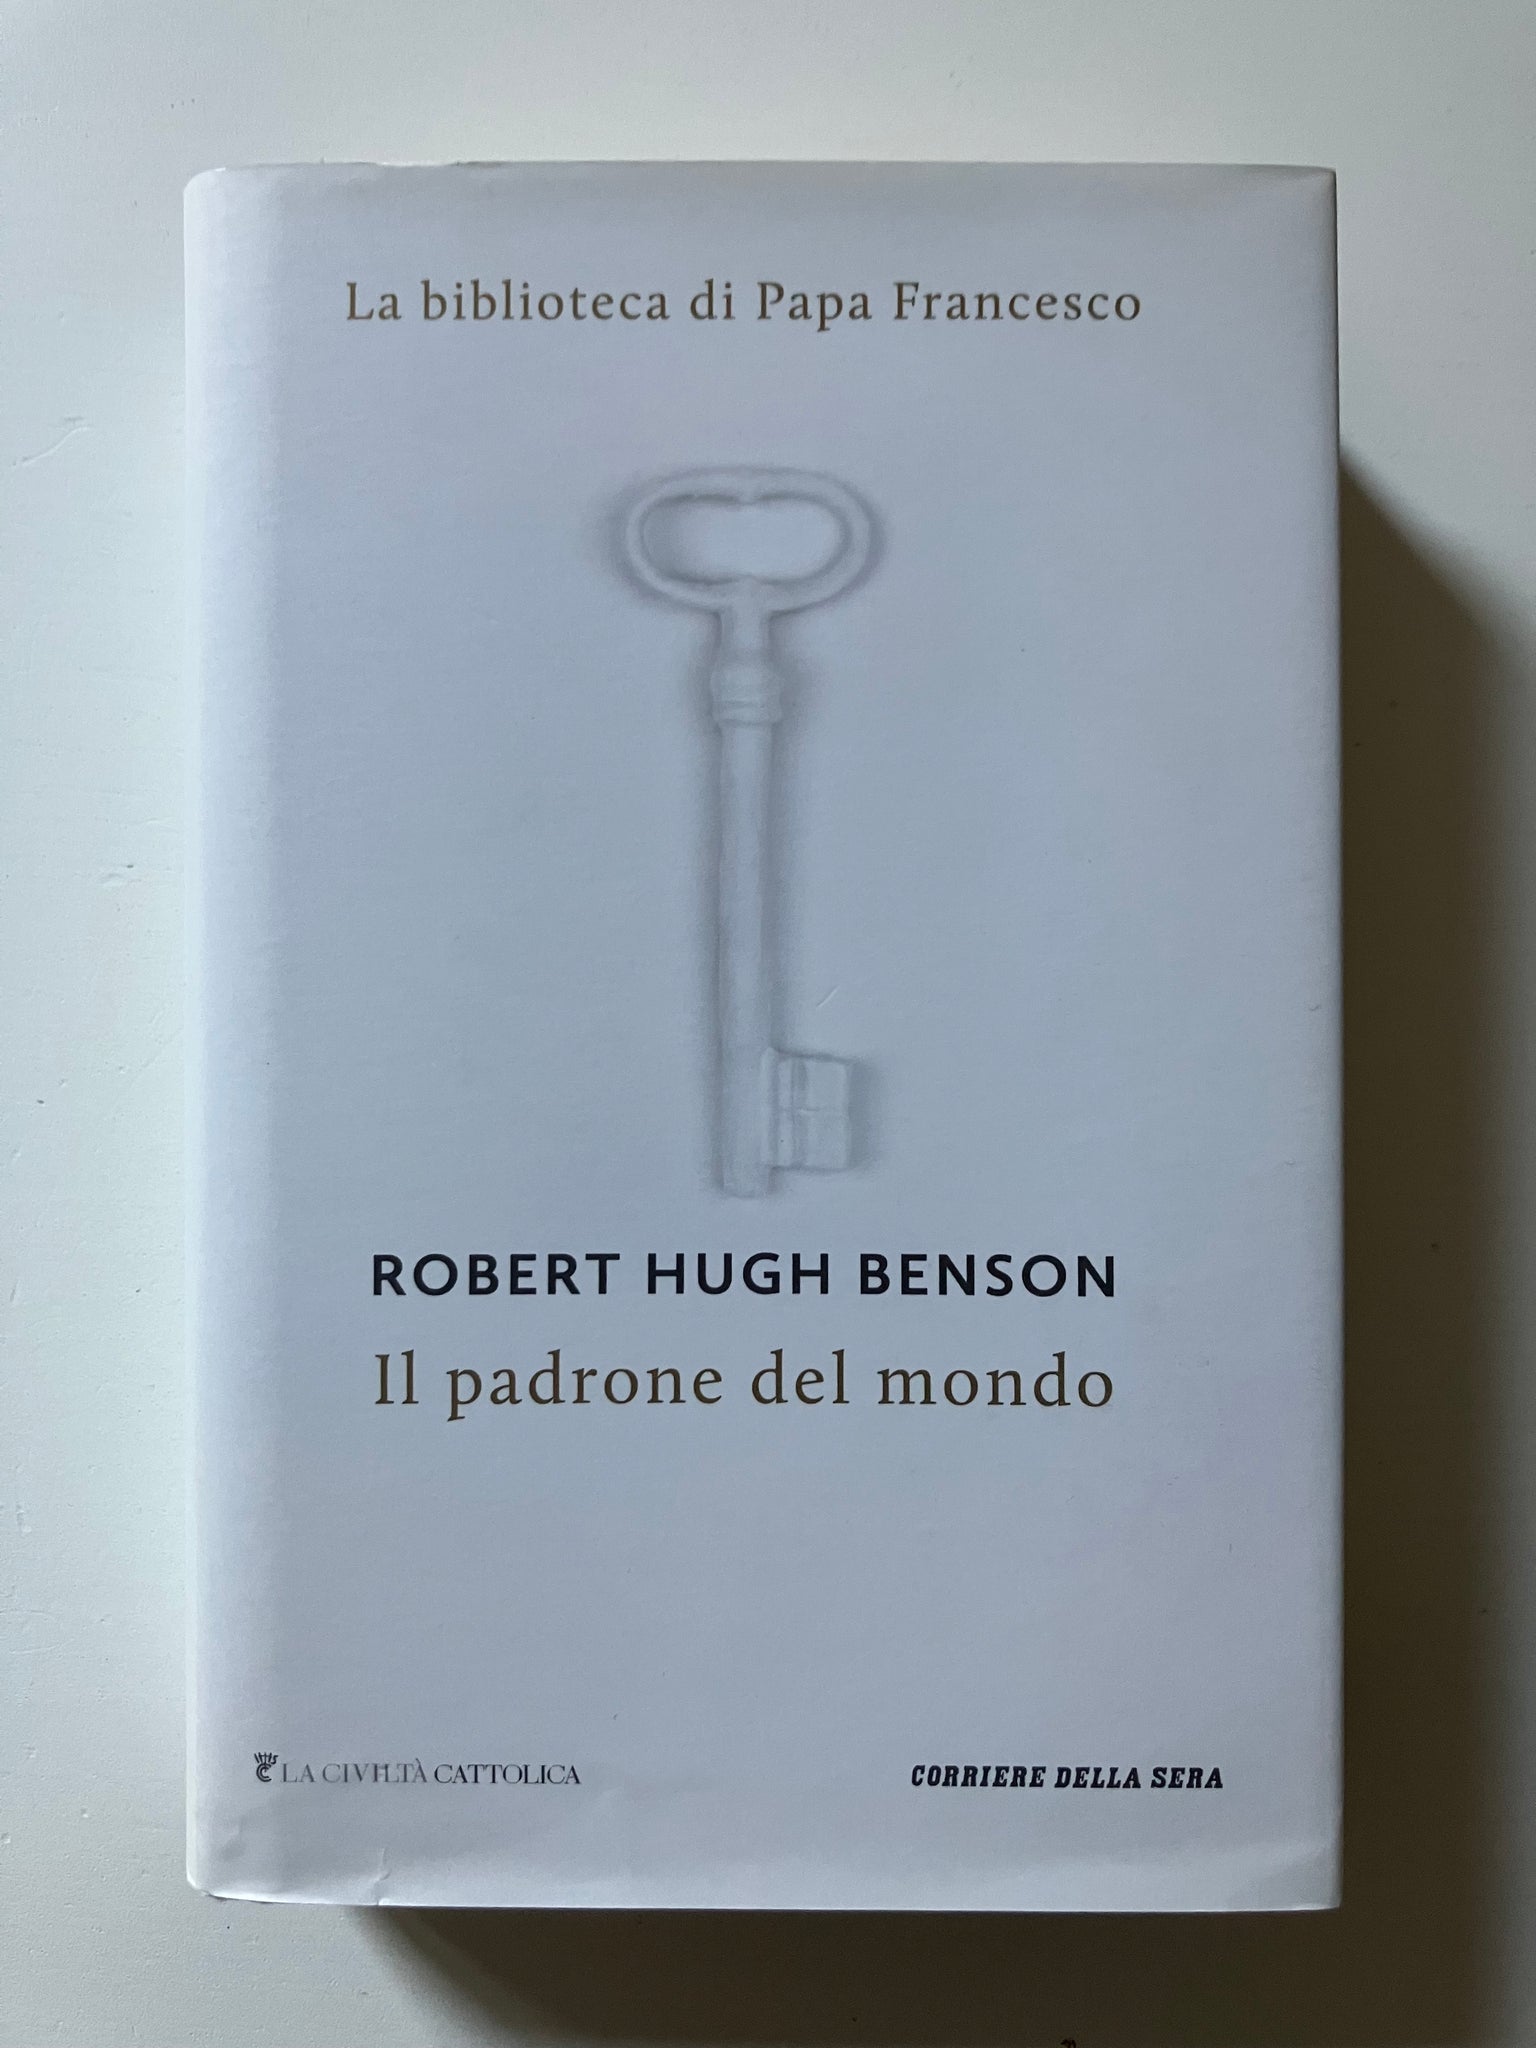 Robert Hugh Benson - Il padrone del mondo